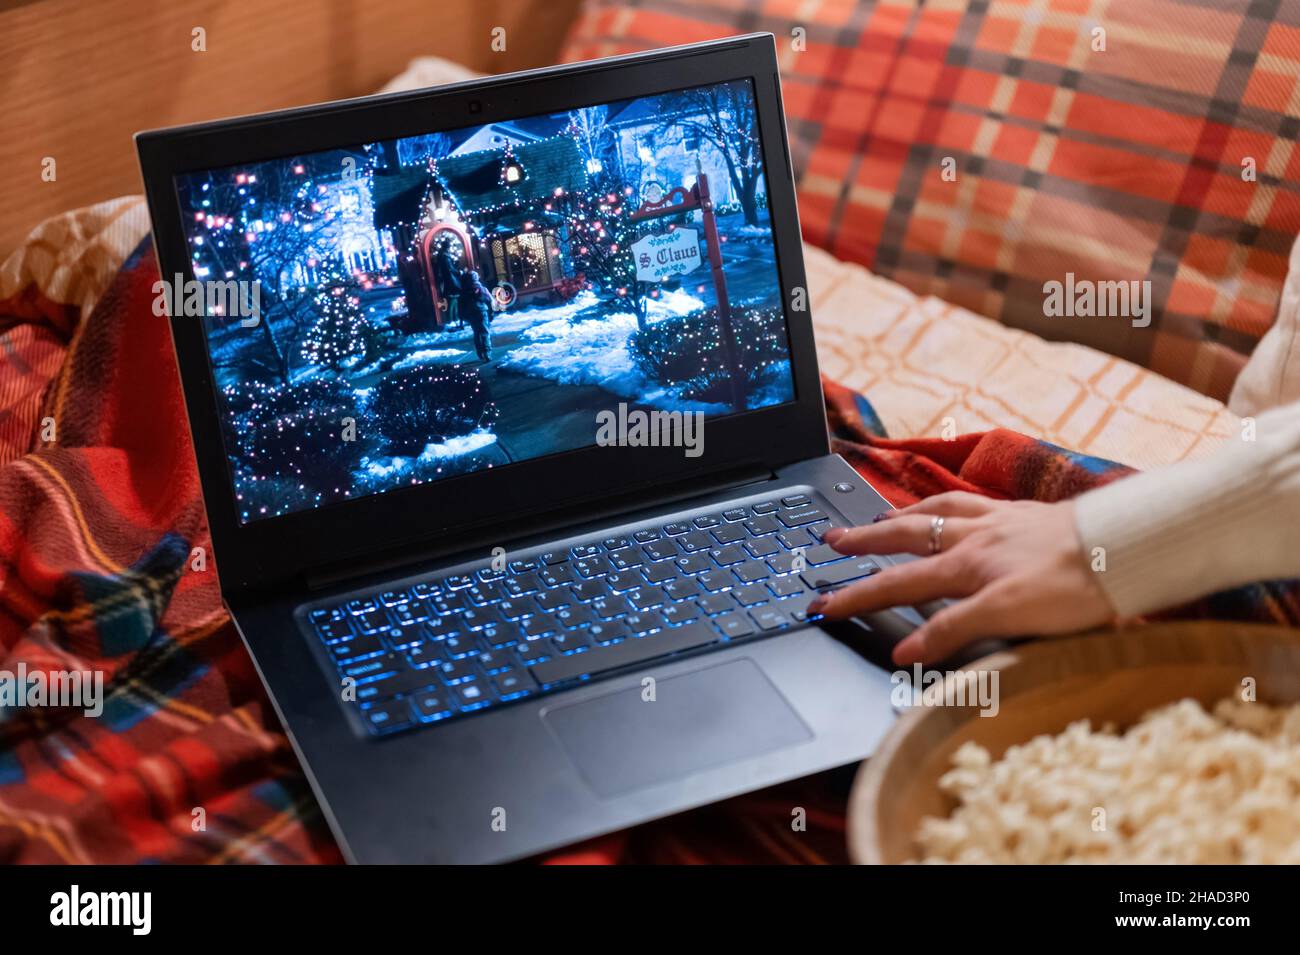 Laptop-Display mit einem festlichen Weihnachtsfilm „Home Alone“ auf einem roten karierten karierten karierten karierten Bett zu Hause und einem Video zum Zurückspulen der weiblichen Hand Stockfoto